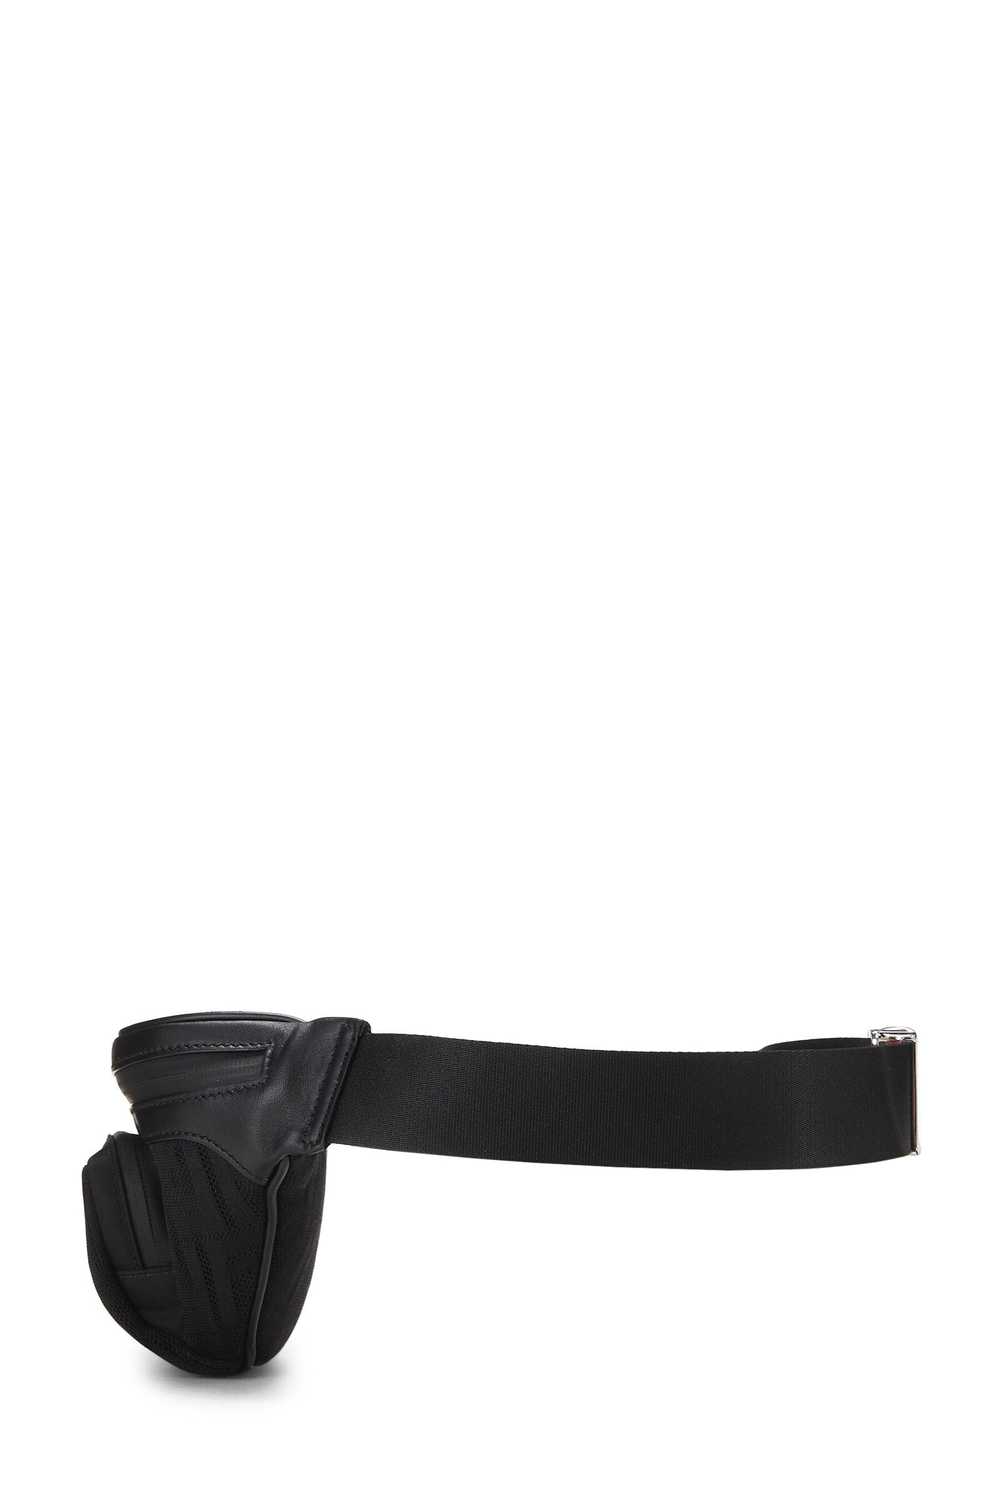 Black Mesh Zucca Belt Bag - image 3